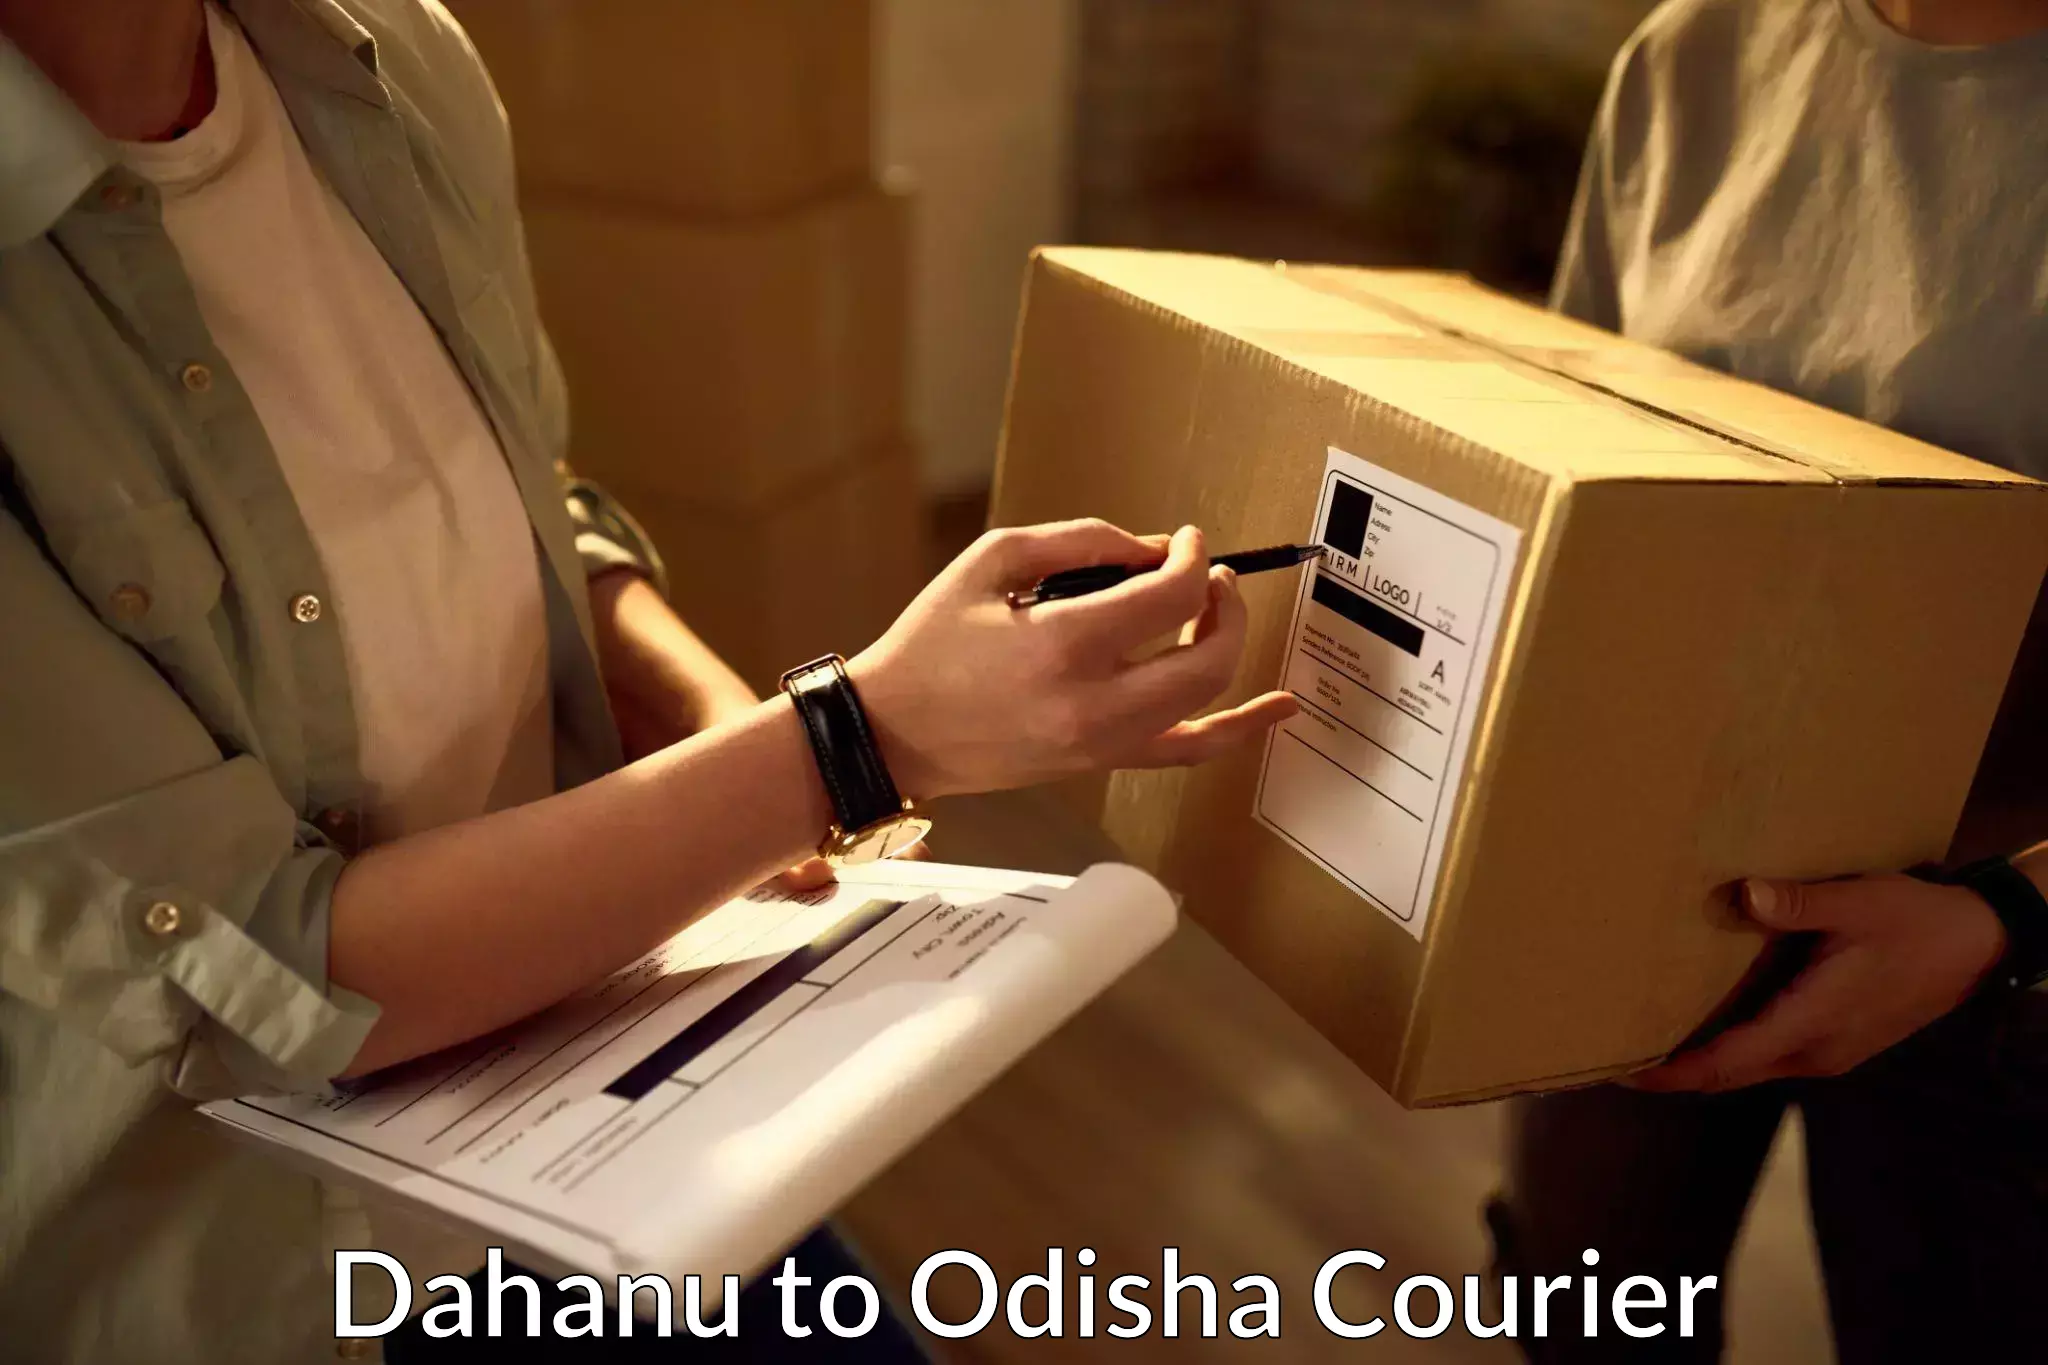 Digital courier platforms Dahanu to Turanga